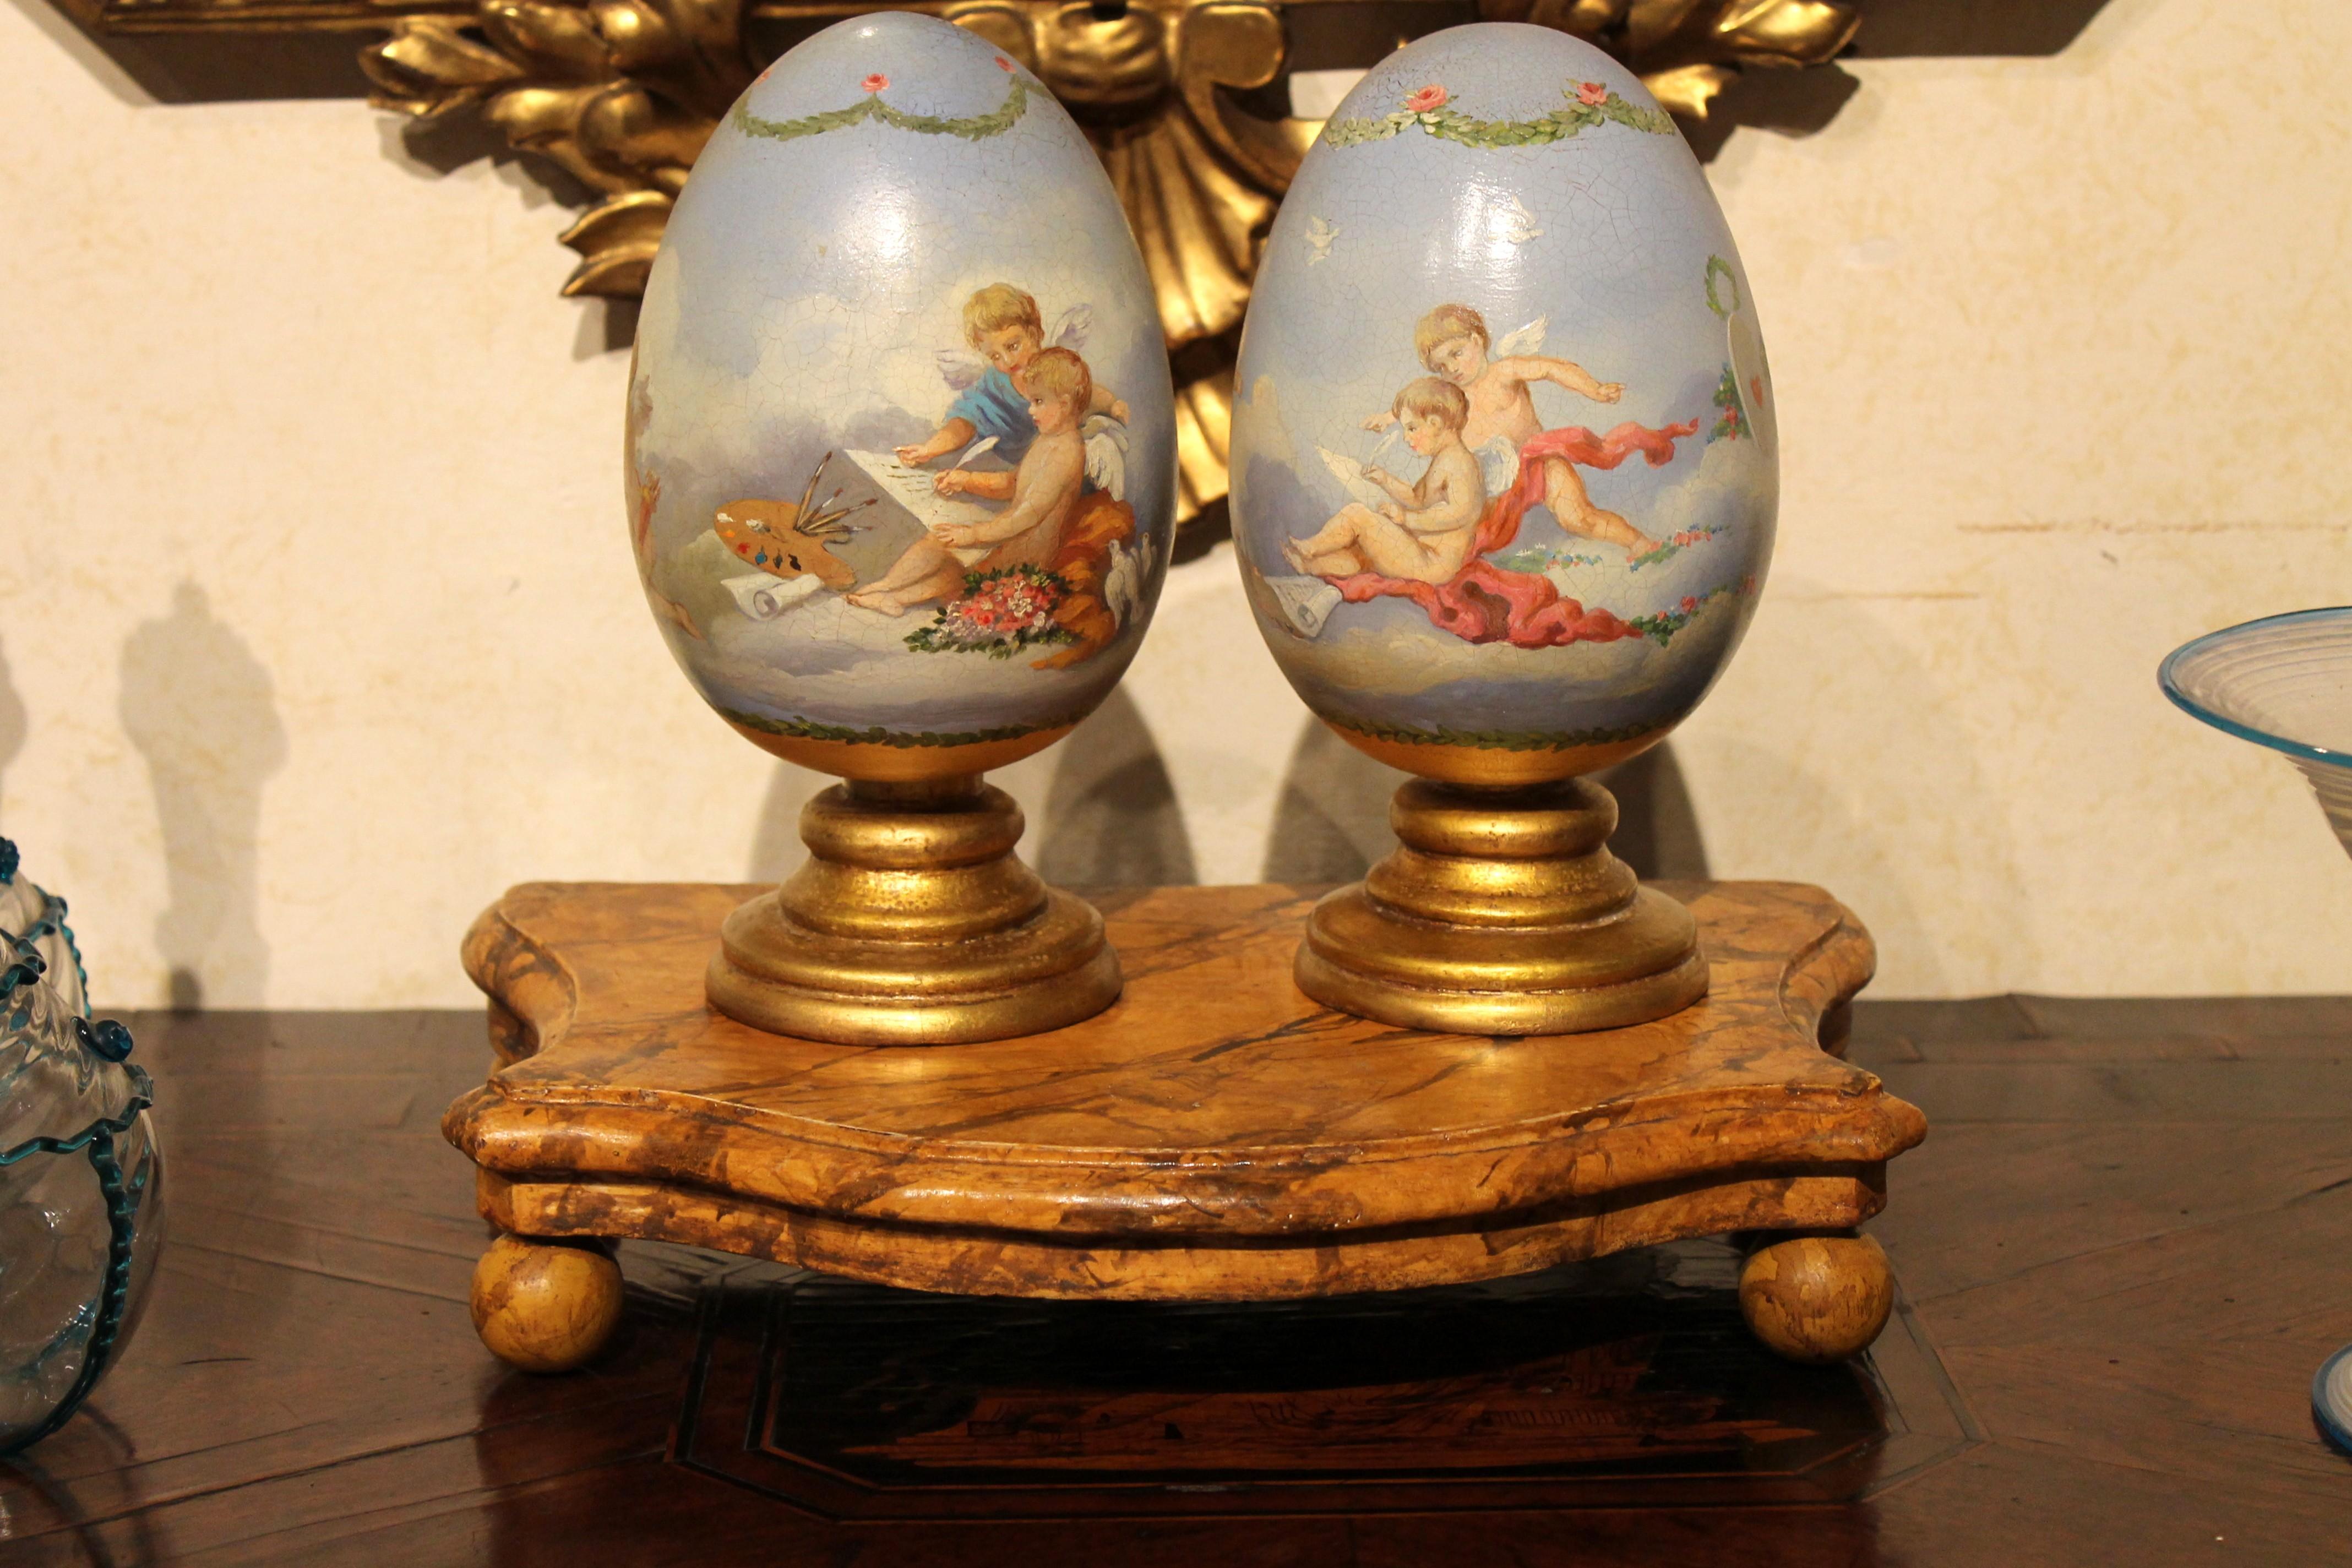 decorative ceramic eggs